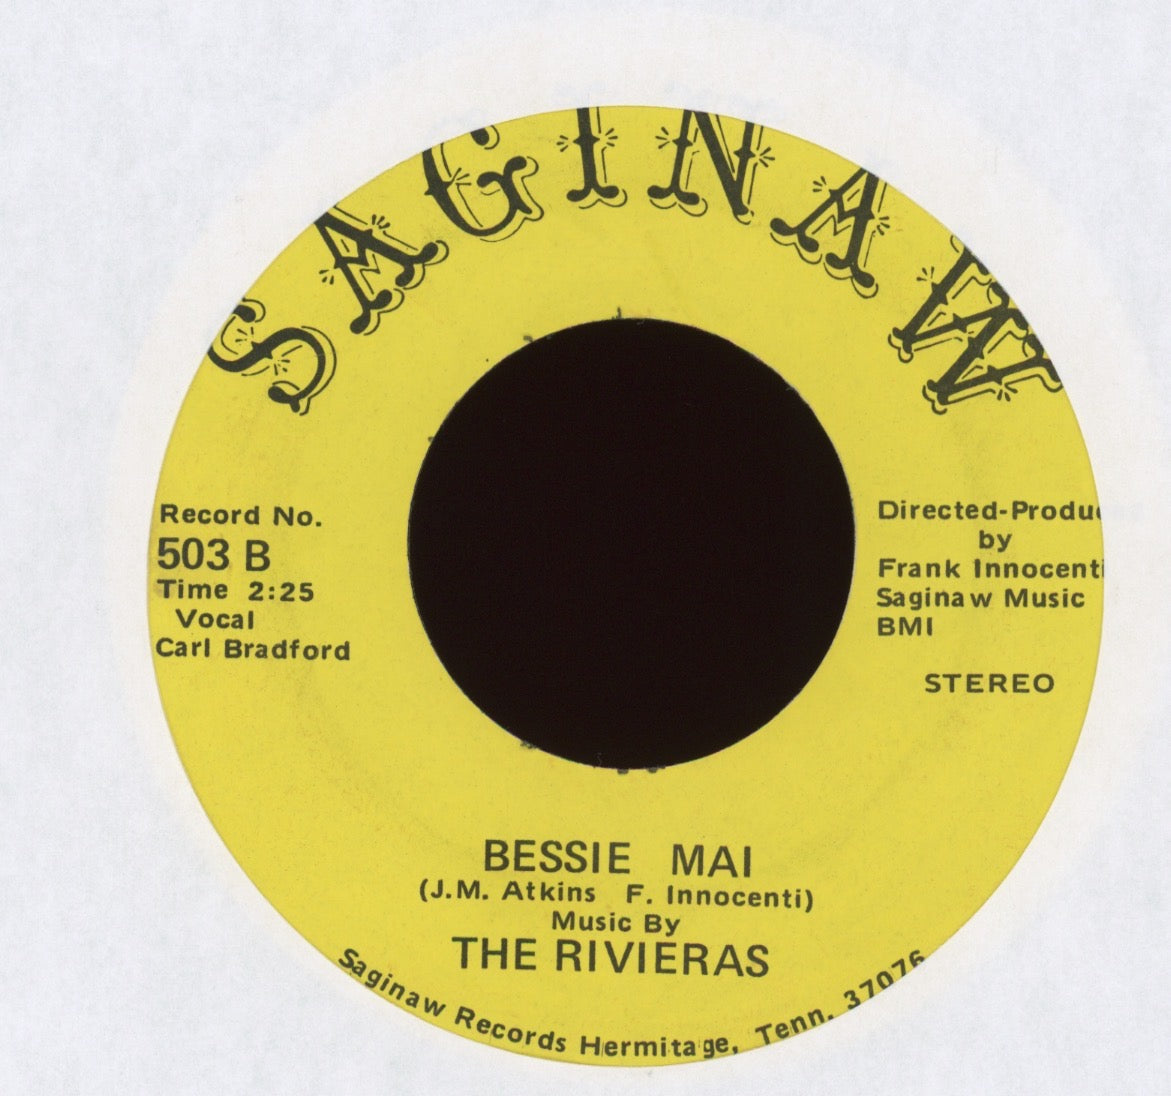 The Rivieras - Bessie-Mai on Saginaw Funk Rock 45